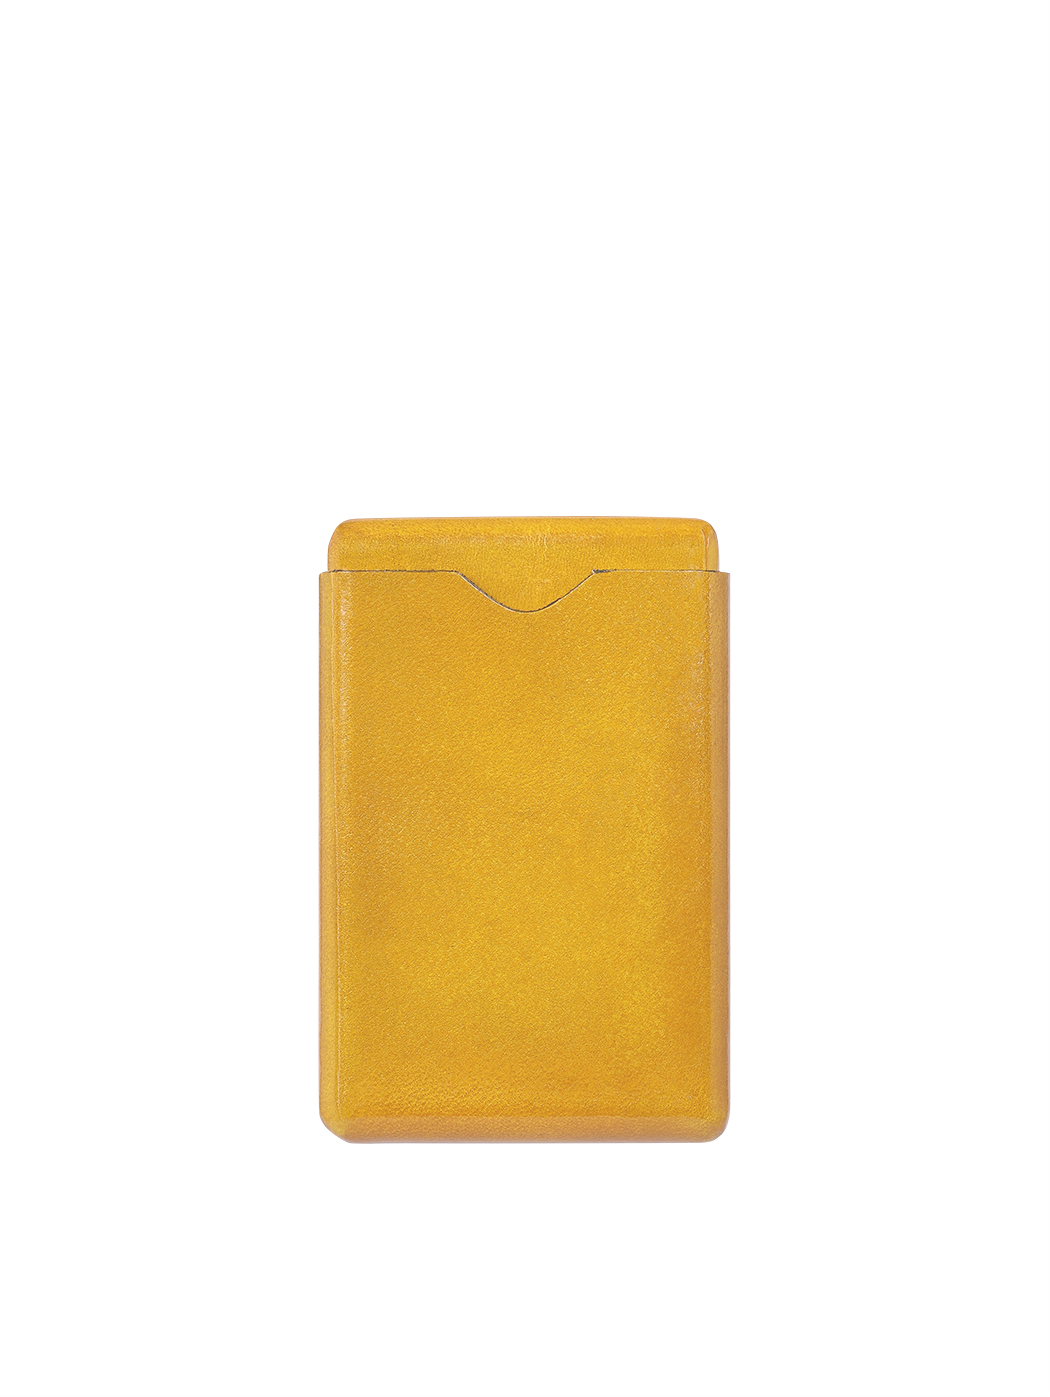 Кожаный футляр для визитных карточек желтого цвета